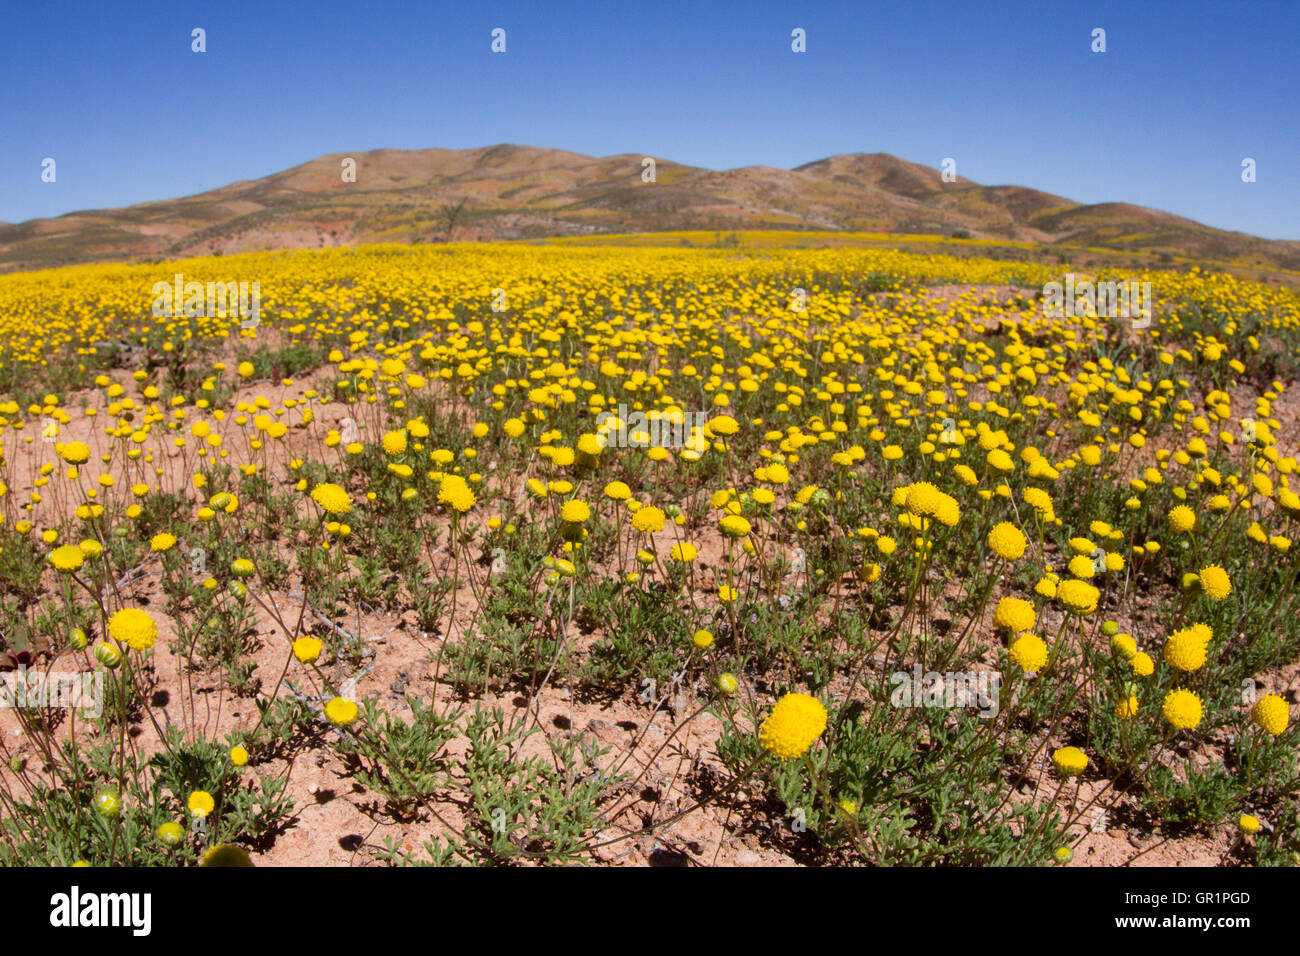 Il deserto fiorisce: fiori gialli dopo forti piogge nel deserto karoo, namaqualand, sud africa Foto Stock